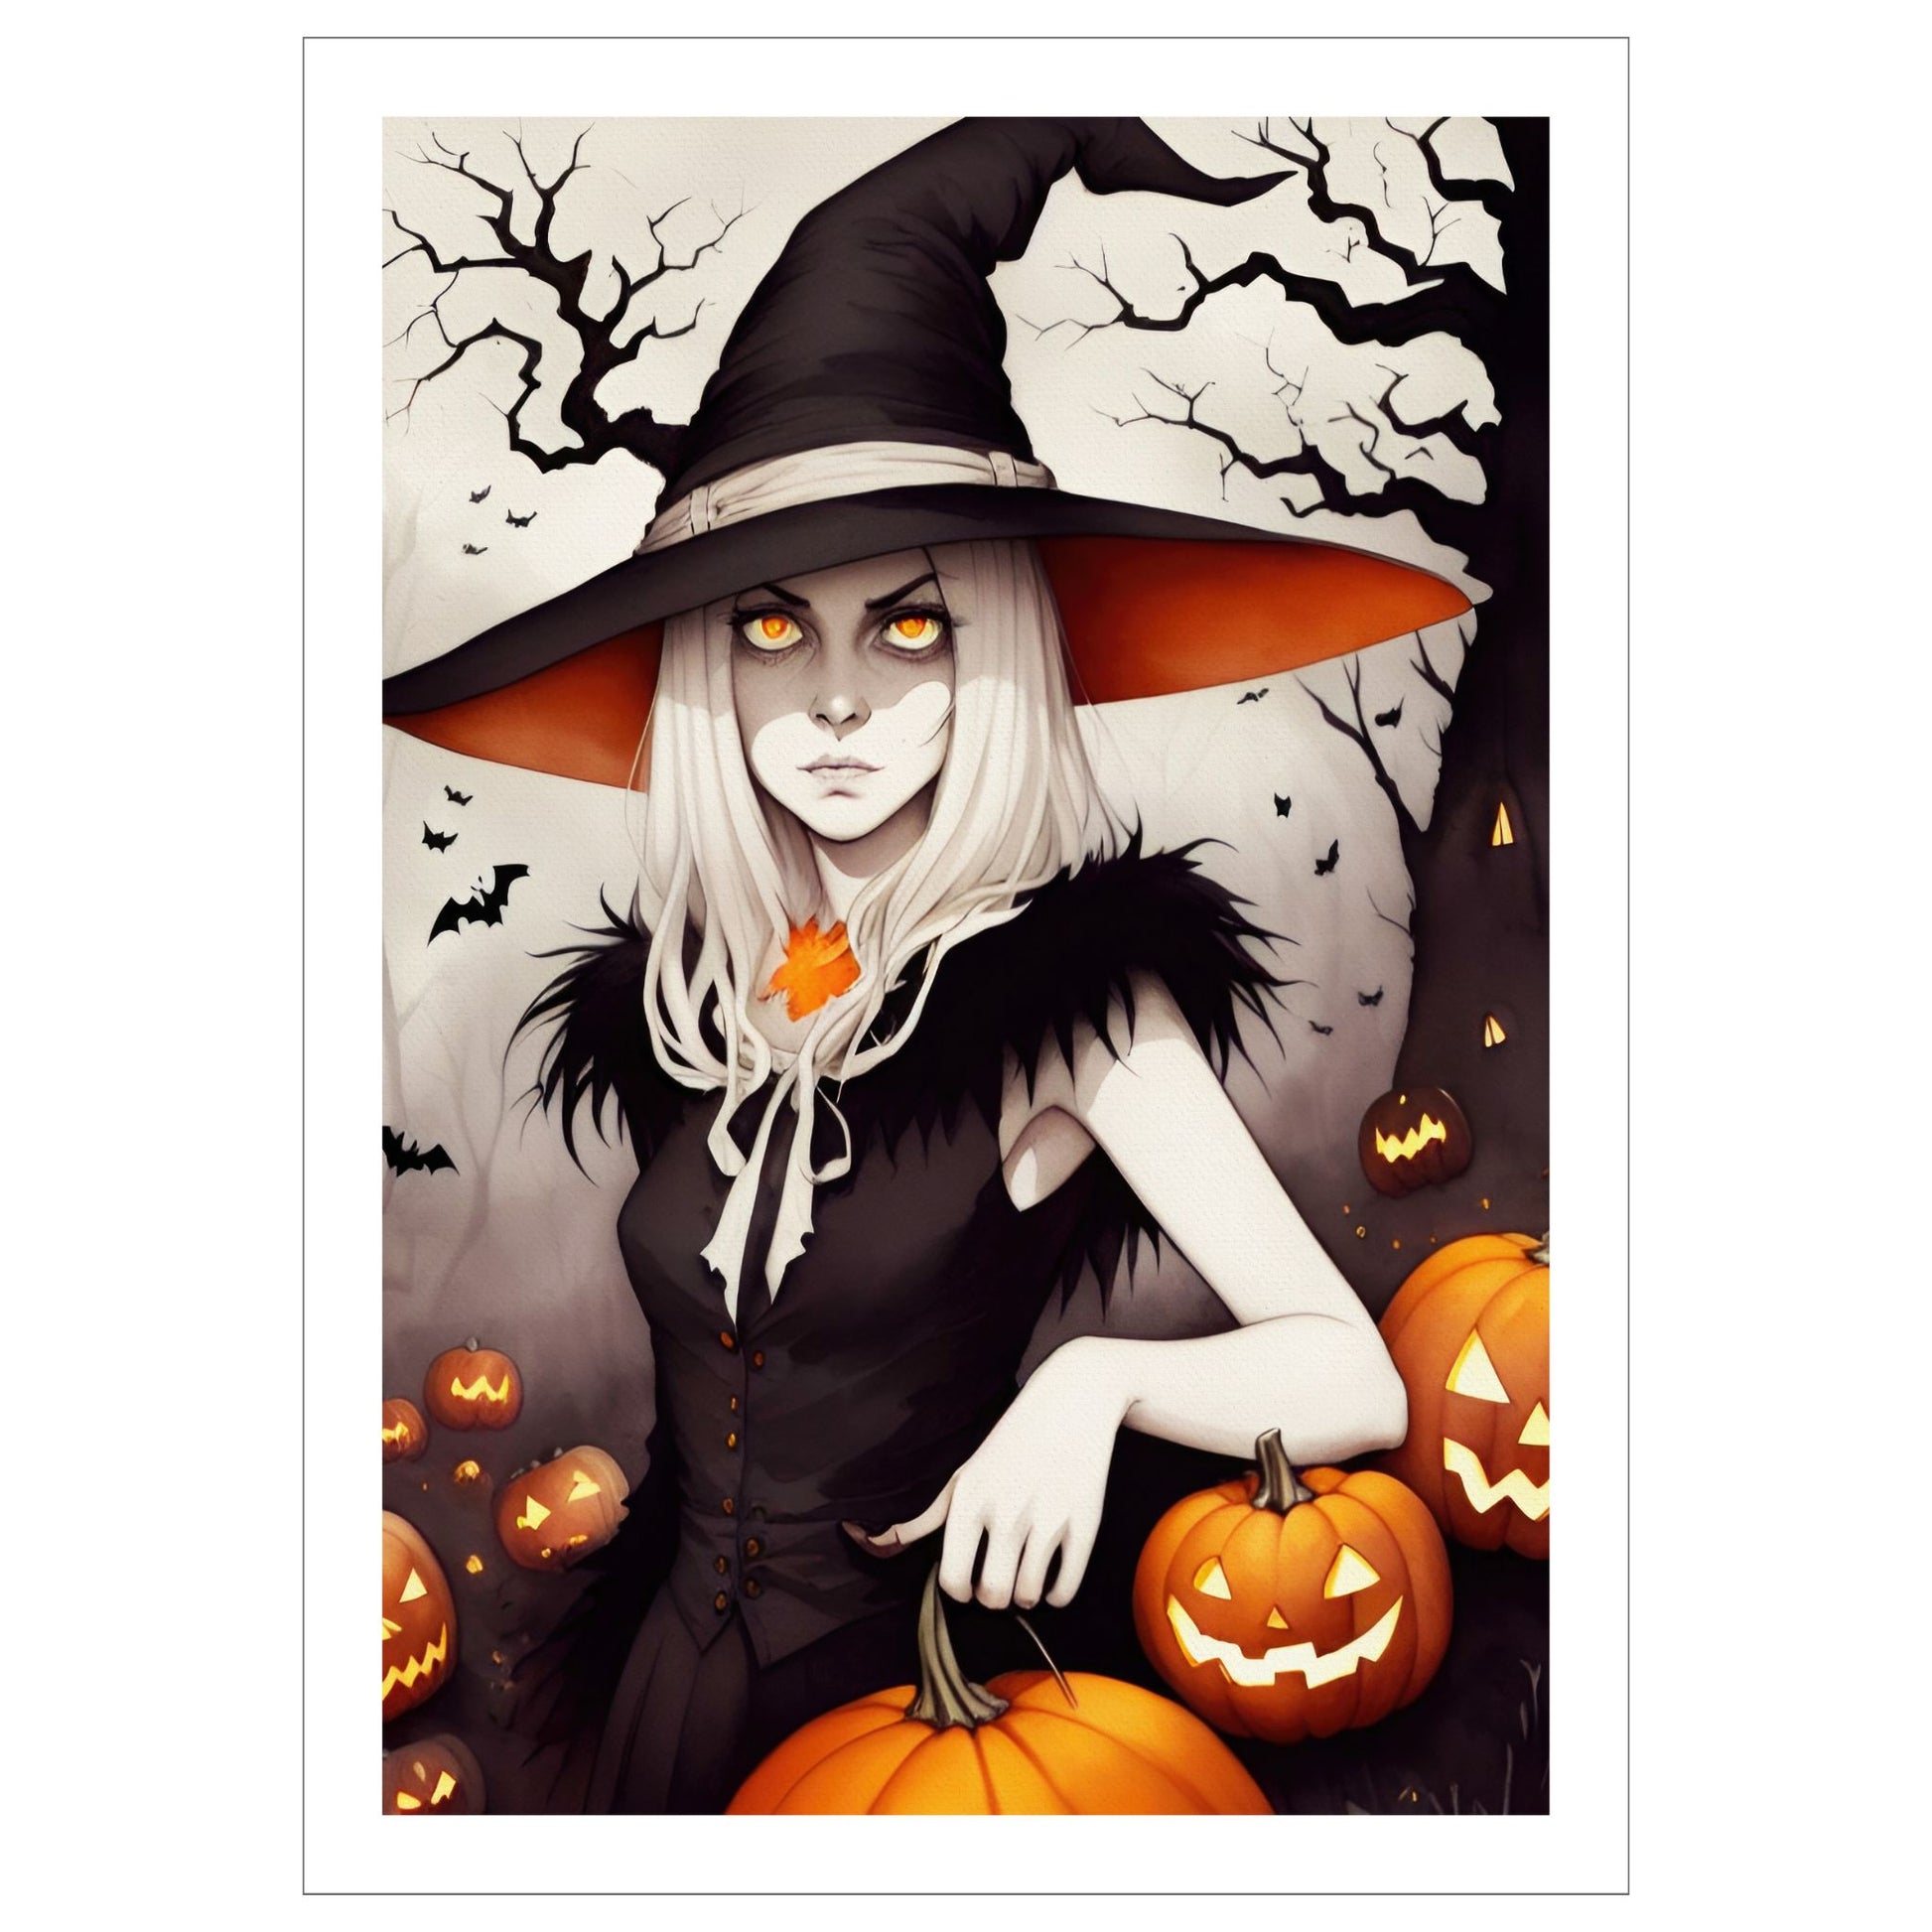 Creepy og kul halloweenplakat av en heks